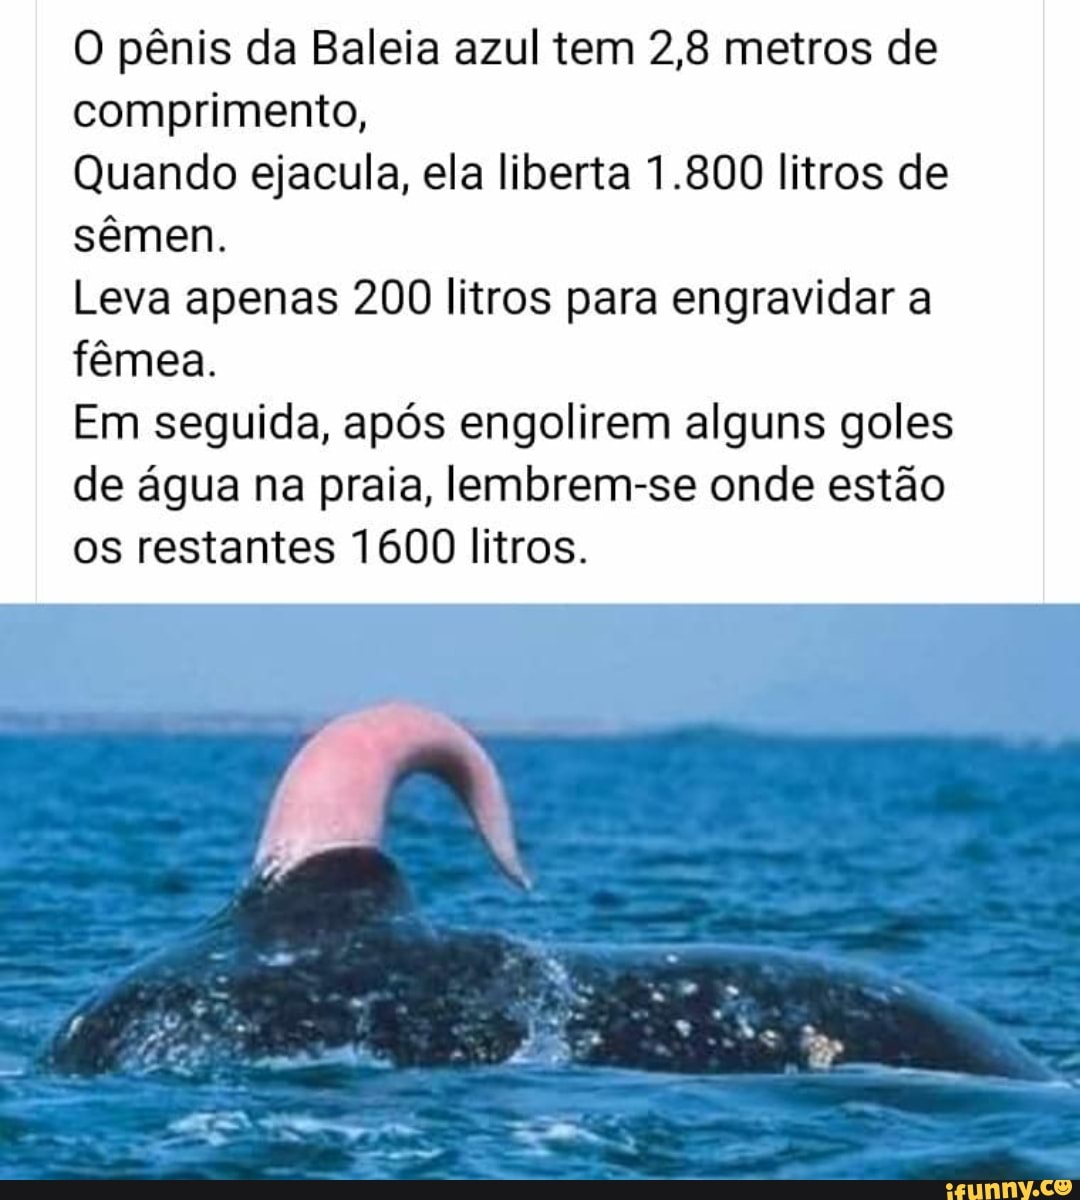 O Pênis Da Baleia Azul Tem 28 Metros De Comprimento Quando Ejacula Ela Liberta 1800 Litros